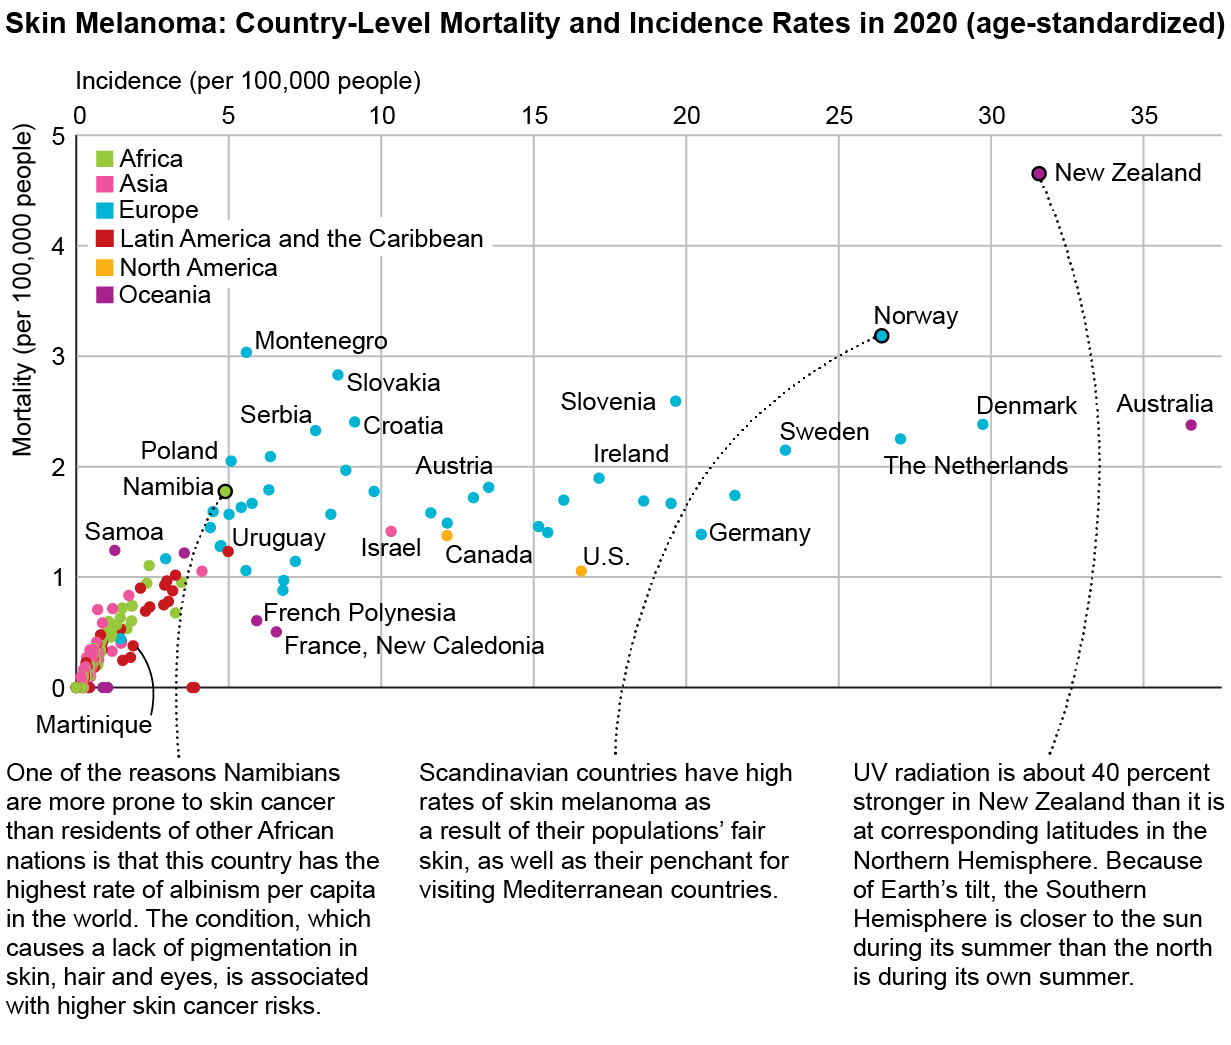 El gráfico muestra las tasas de incidencia y mortalidad estandarizadas por edad del melanoma cutáneo por país en 2020.